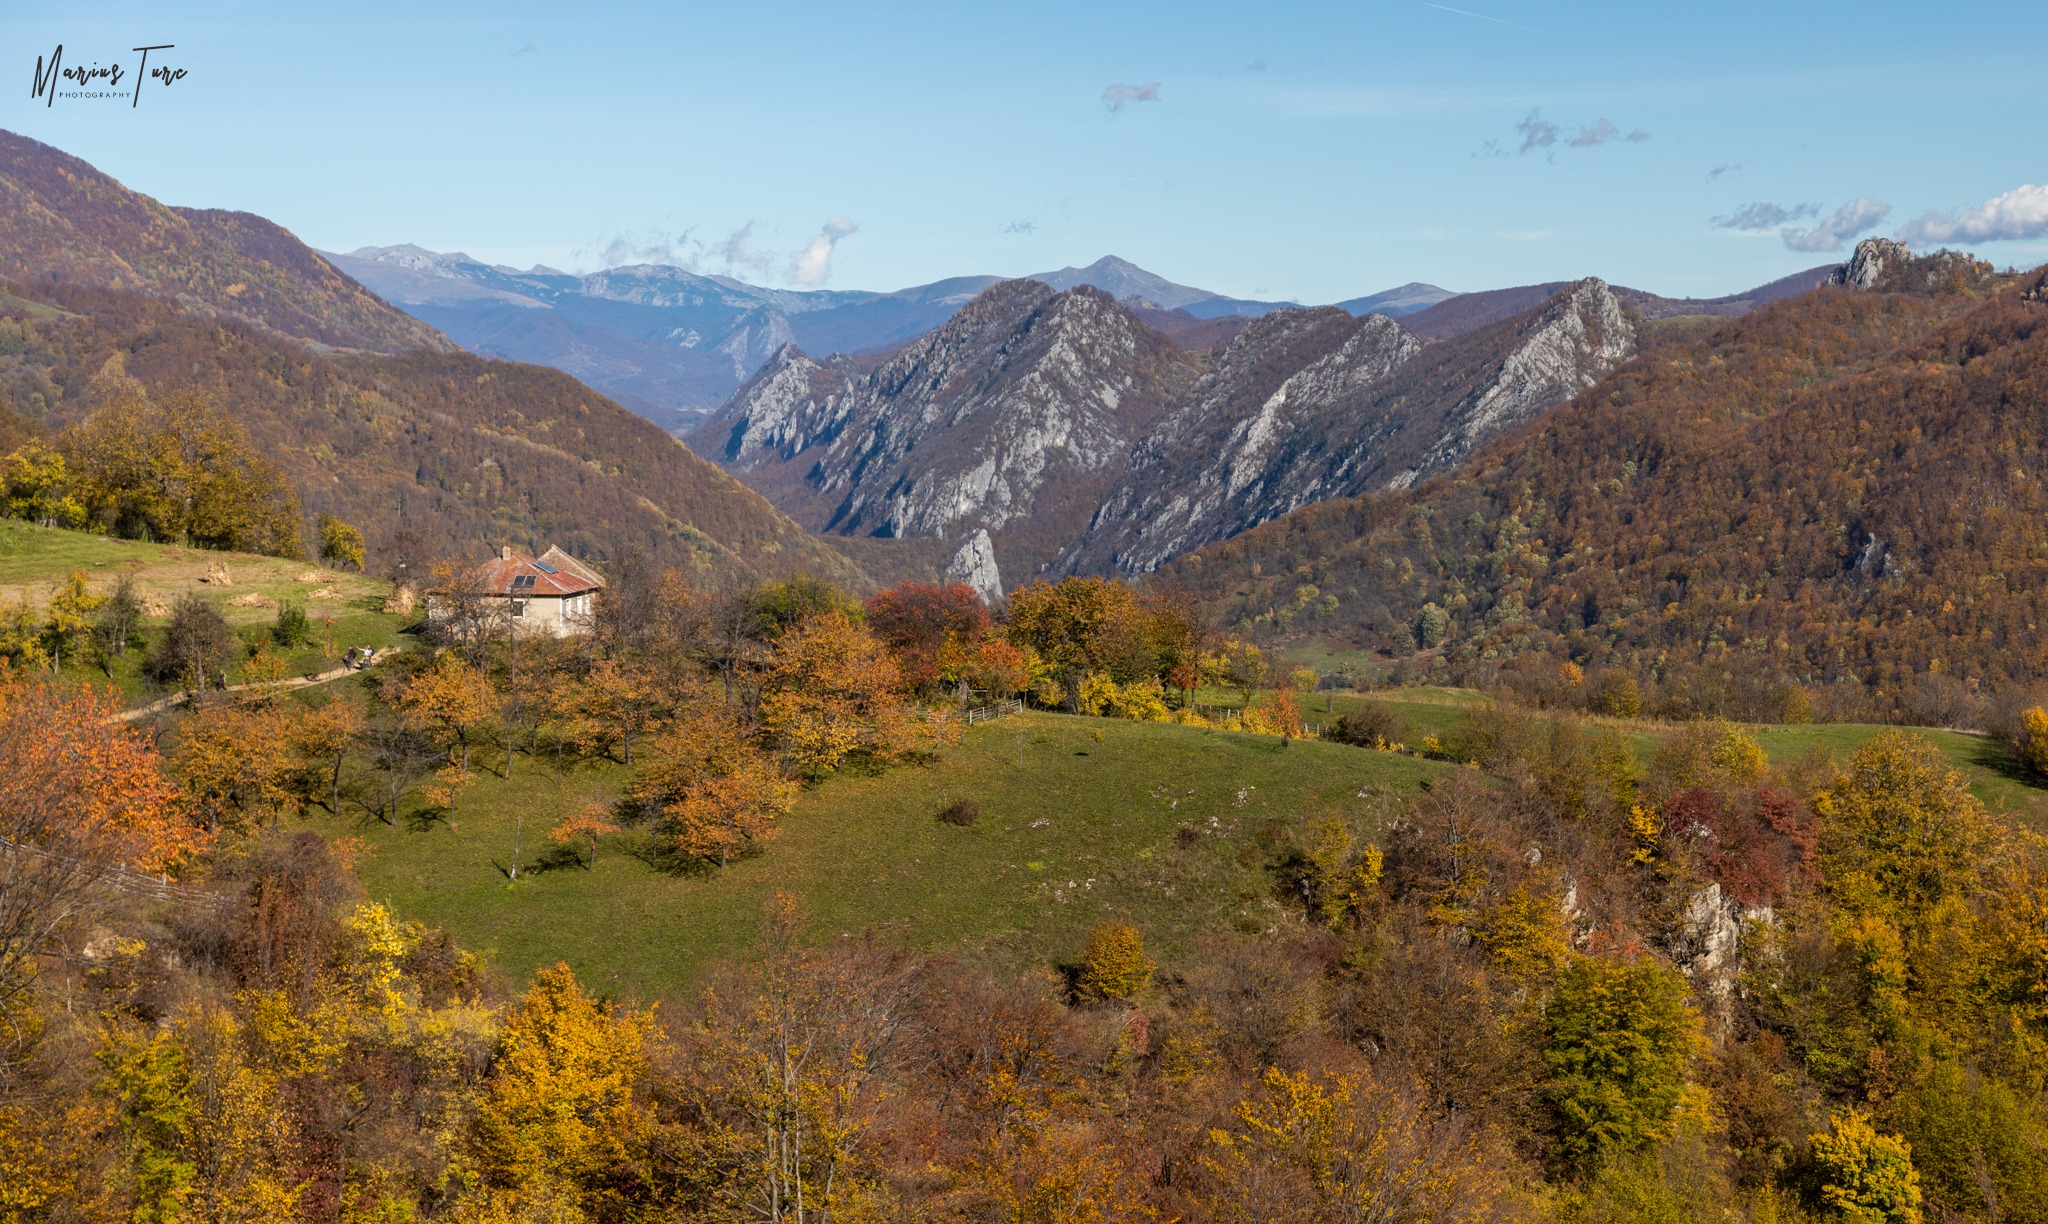  Fosta scoală Ineleț, geanțurile Cernei și Munții Godeanu - Marius Turc